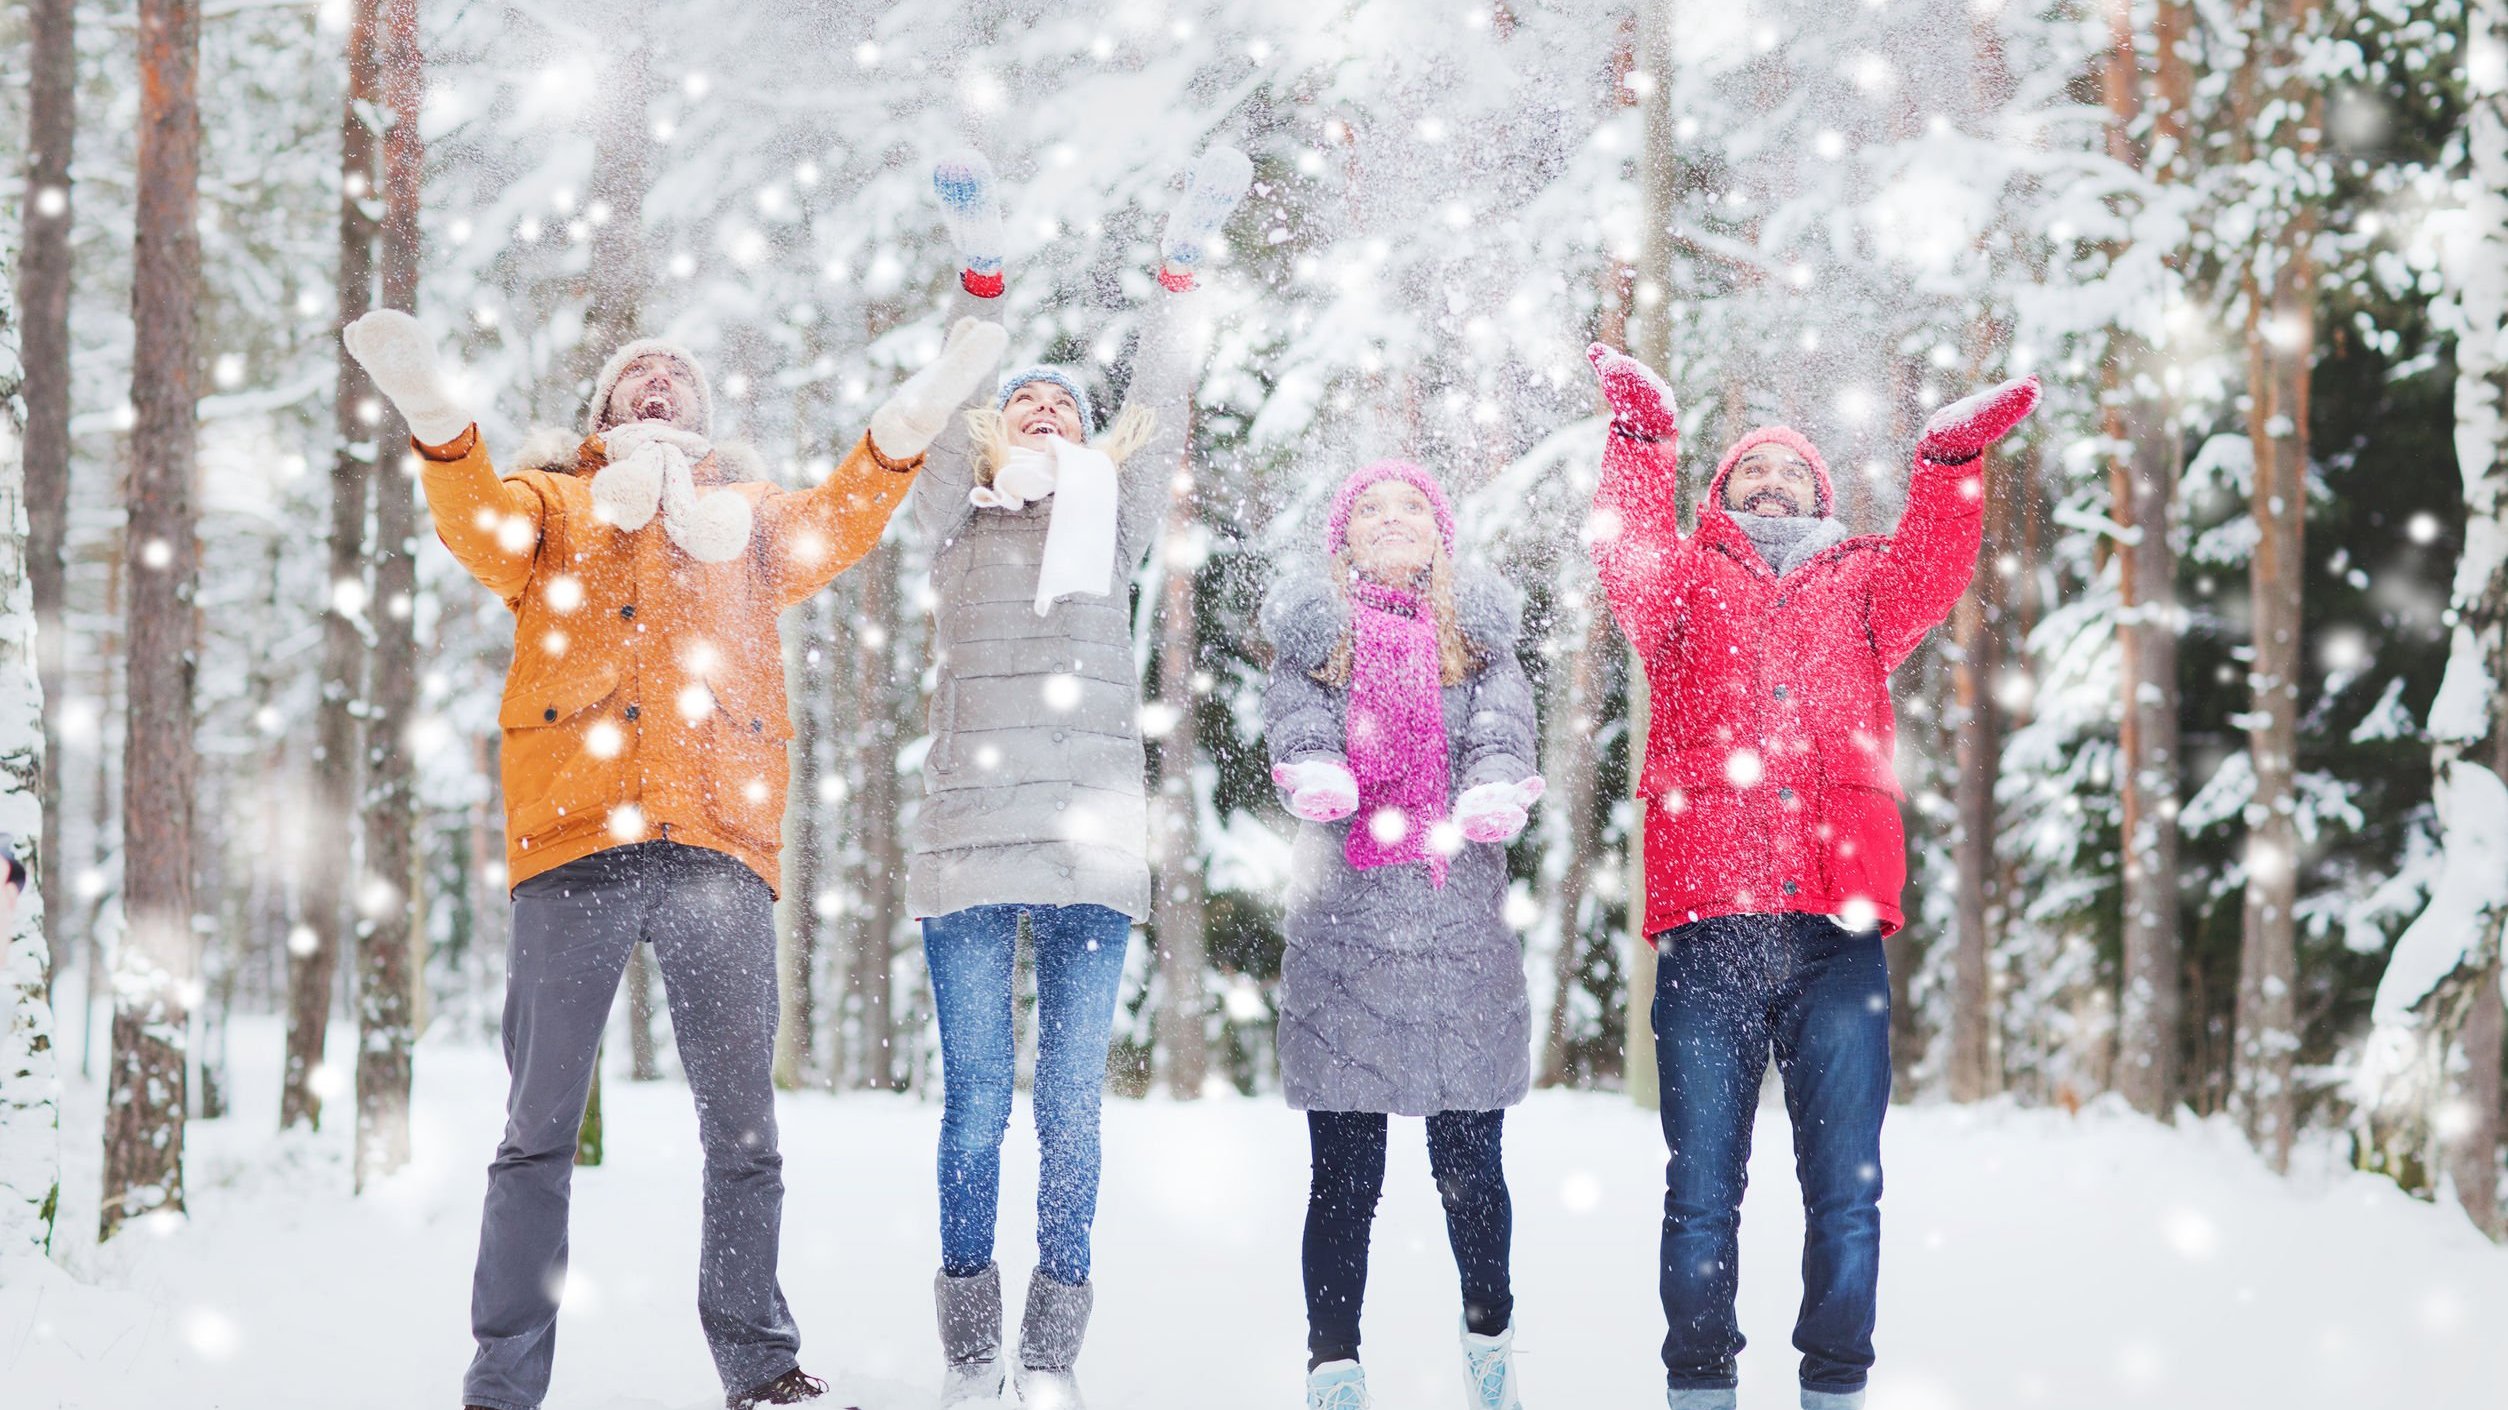 Quatro pessoas agasalhadas brincam com flocos de neve em ambiente exterior. Elas estão com os braços erguidos e sorriem.